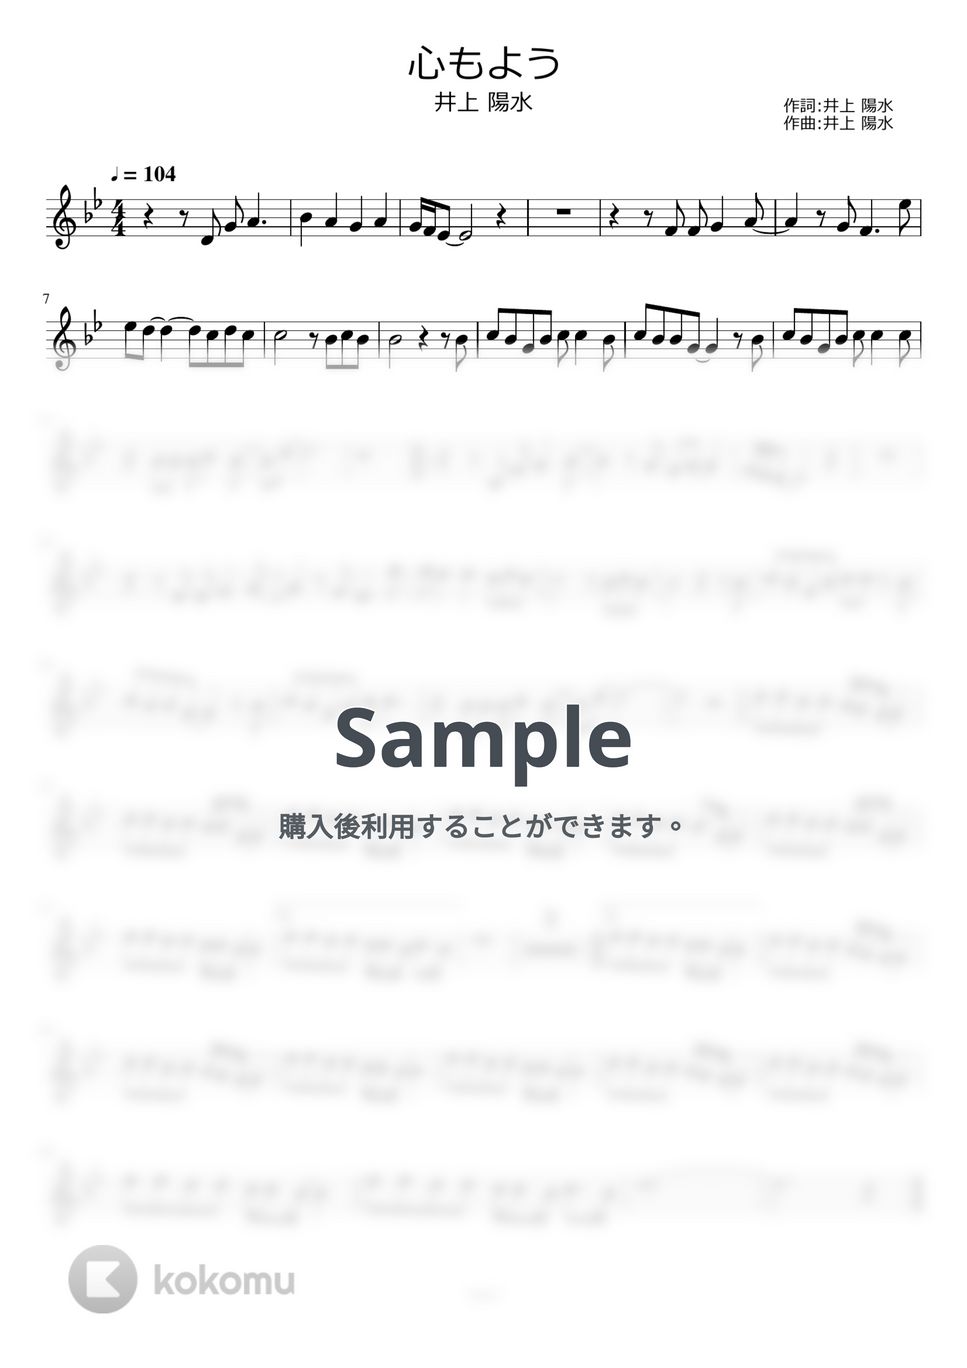 井上陽水 - 心もよう by ayako music school